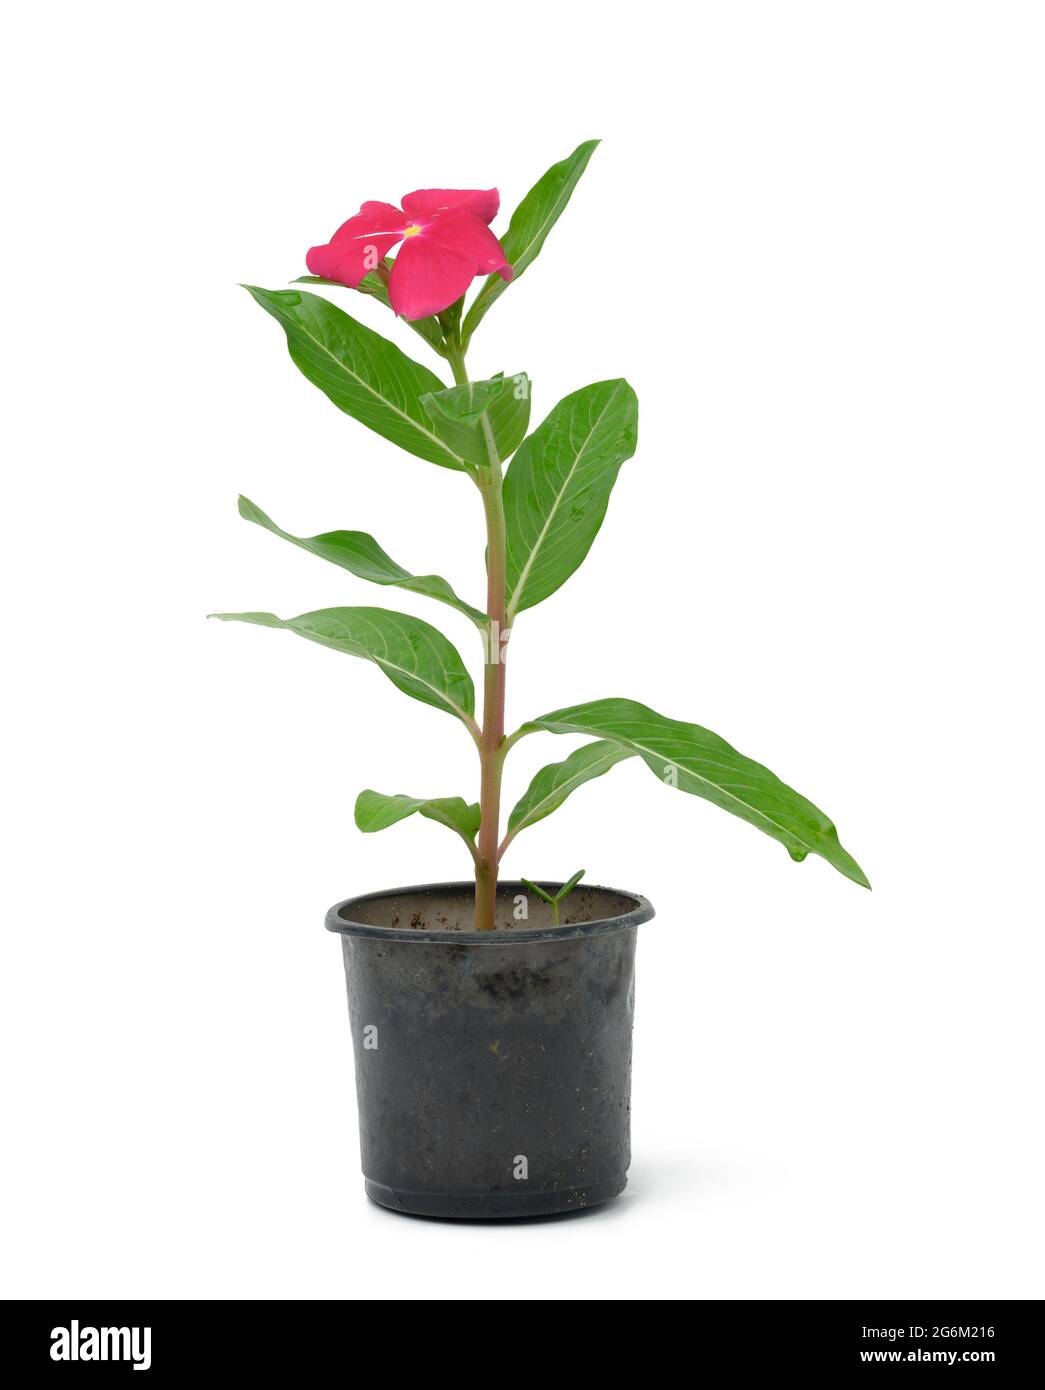 Fiore rosa cataranthus in vaso di plastica nero isolato su sfondo bianco, pianta per il trapianto in giardino Foto Stock